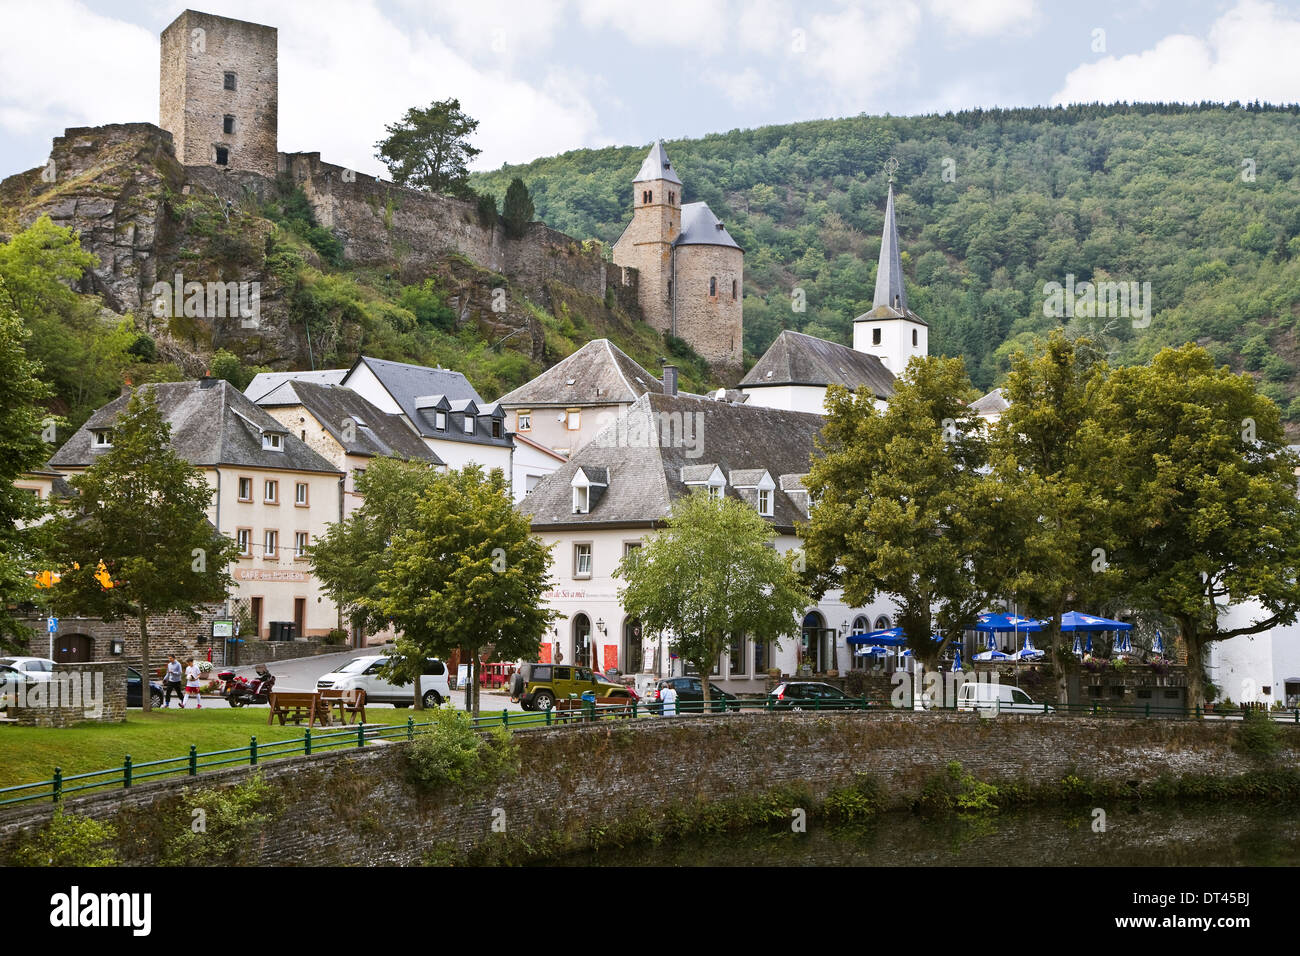 Blick auf Esch-sur-Sûre, Luxemburg, Europa an einem bewölkten Tag, wie man ihn im Sommer vom Flussufer aus sieht, mit Ruine einer alten Burg auf dem Hügel Stockfoto